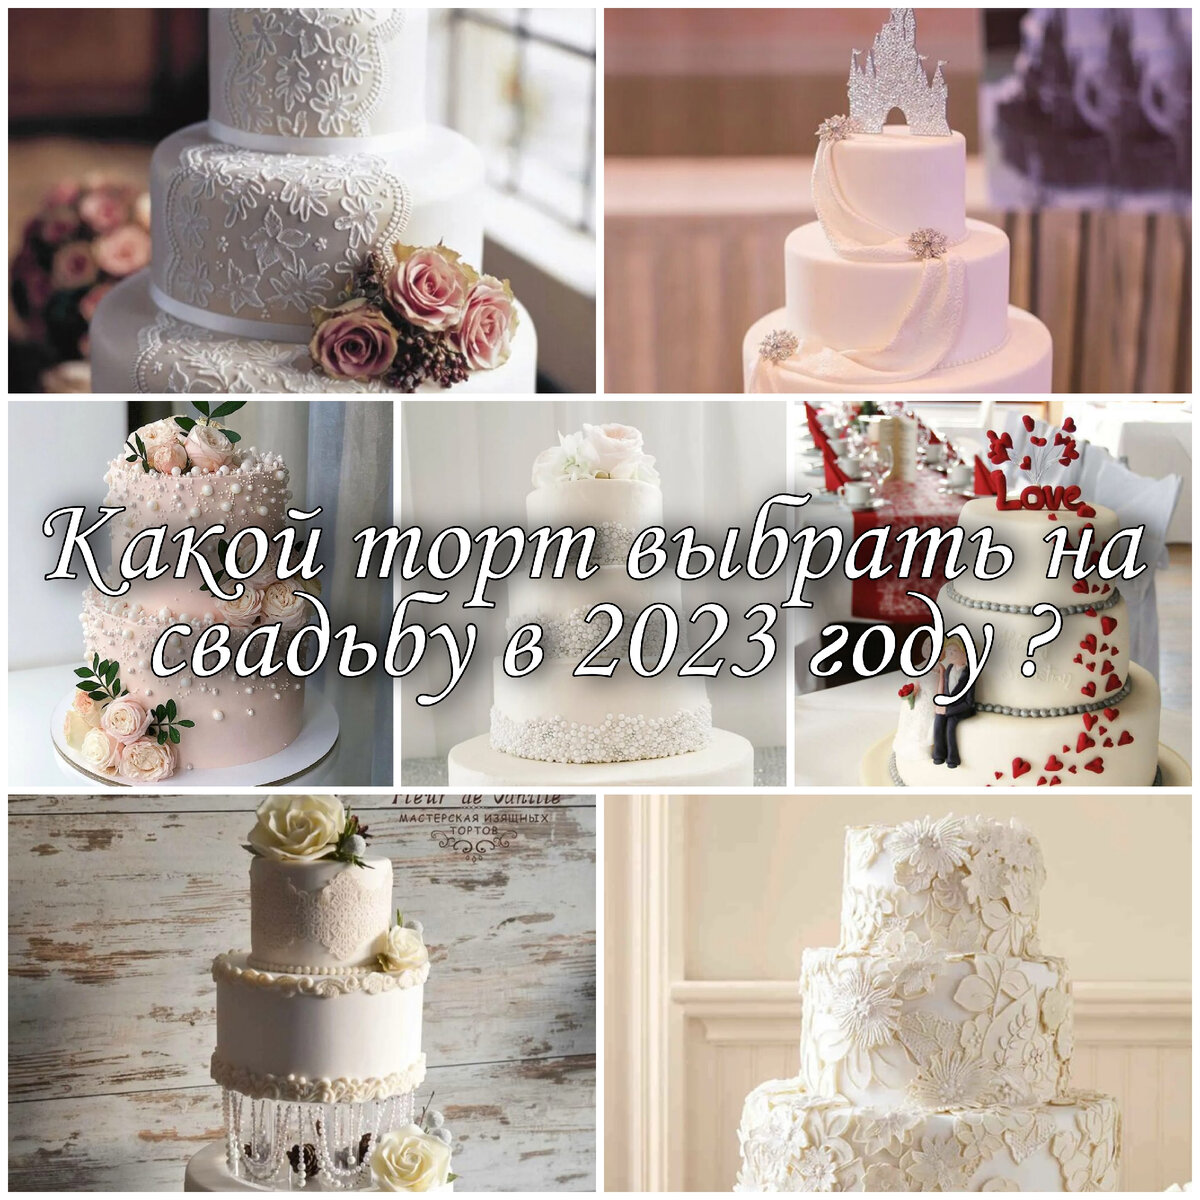 Video by Свадебные торты - заказать торт на свадьбу в СПб